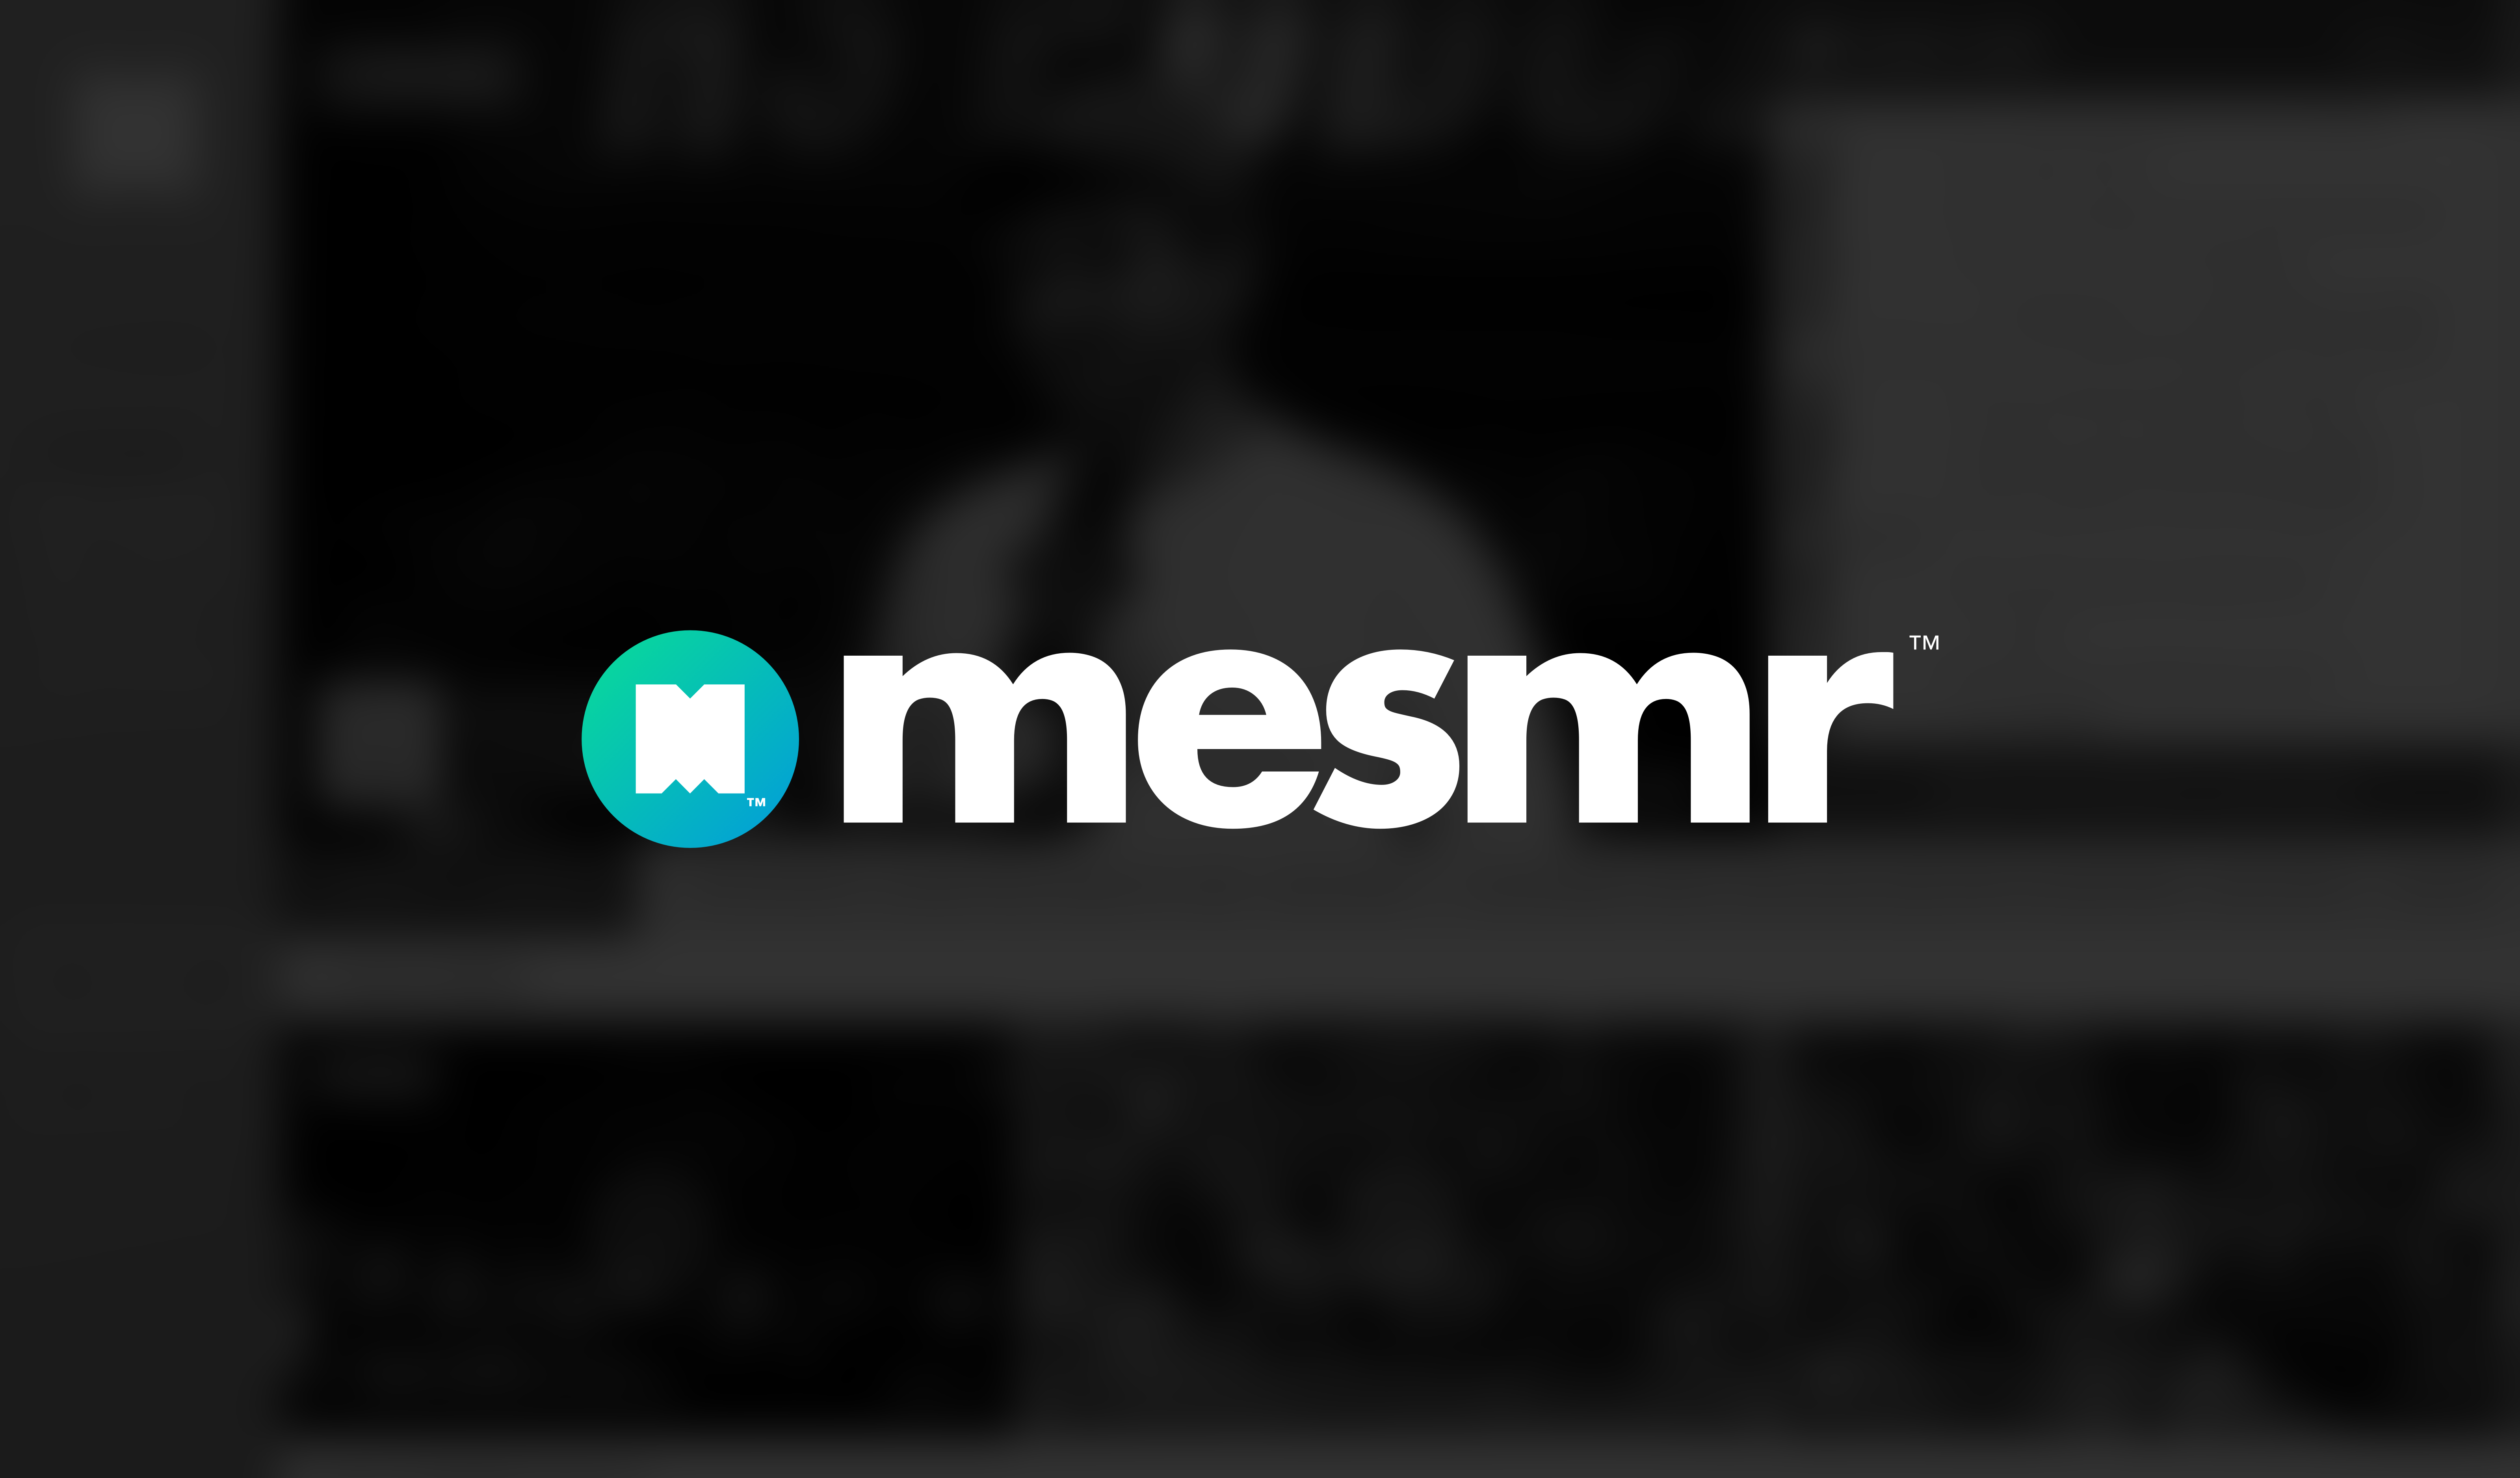 Mesmr - Revolutionary Decentralized Media Platform Announced